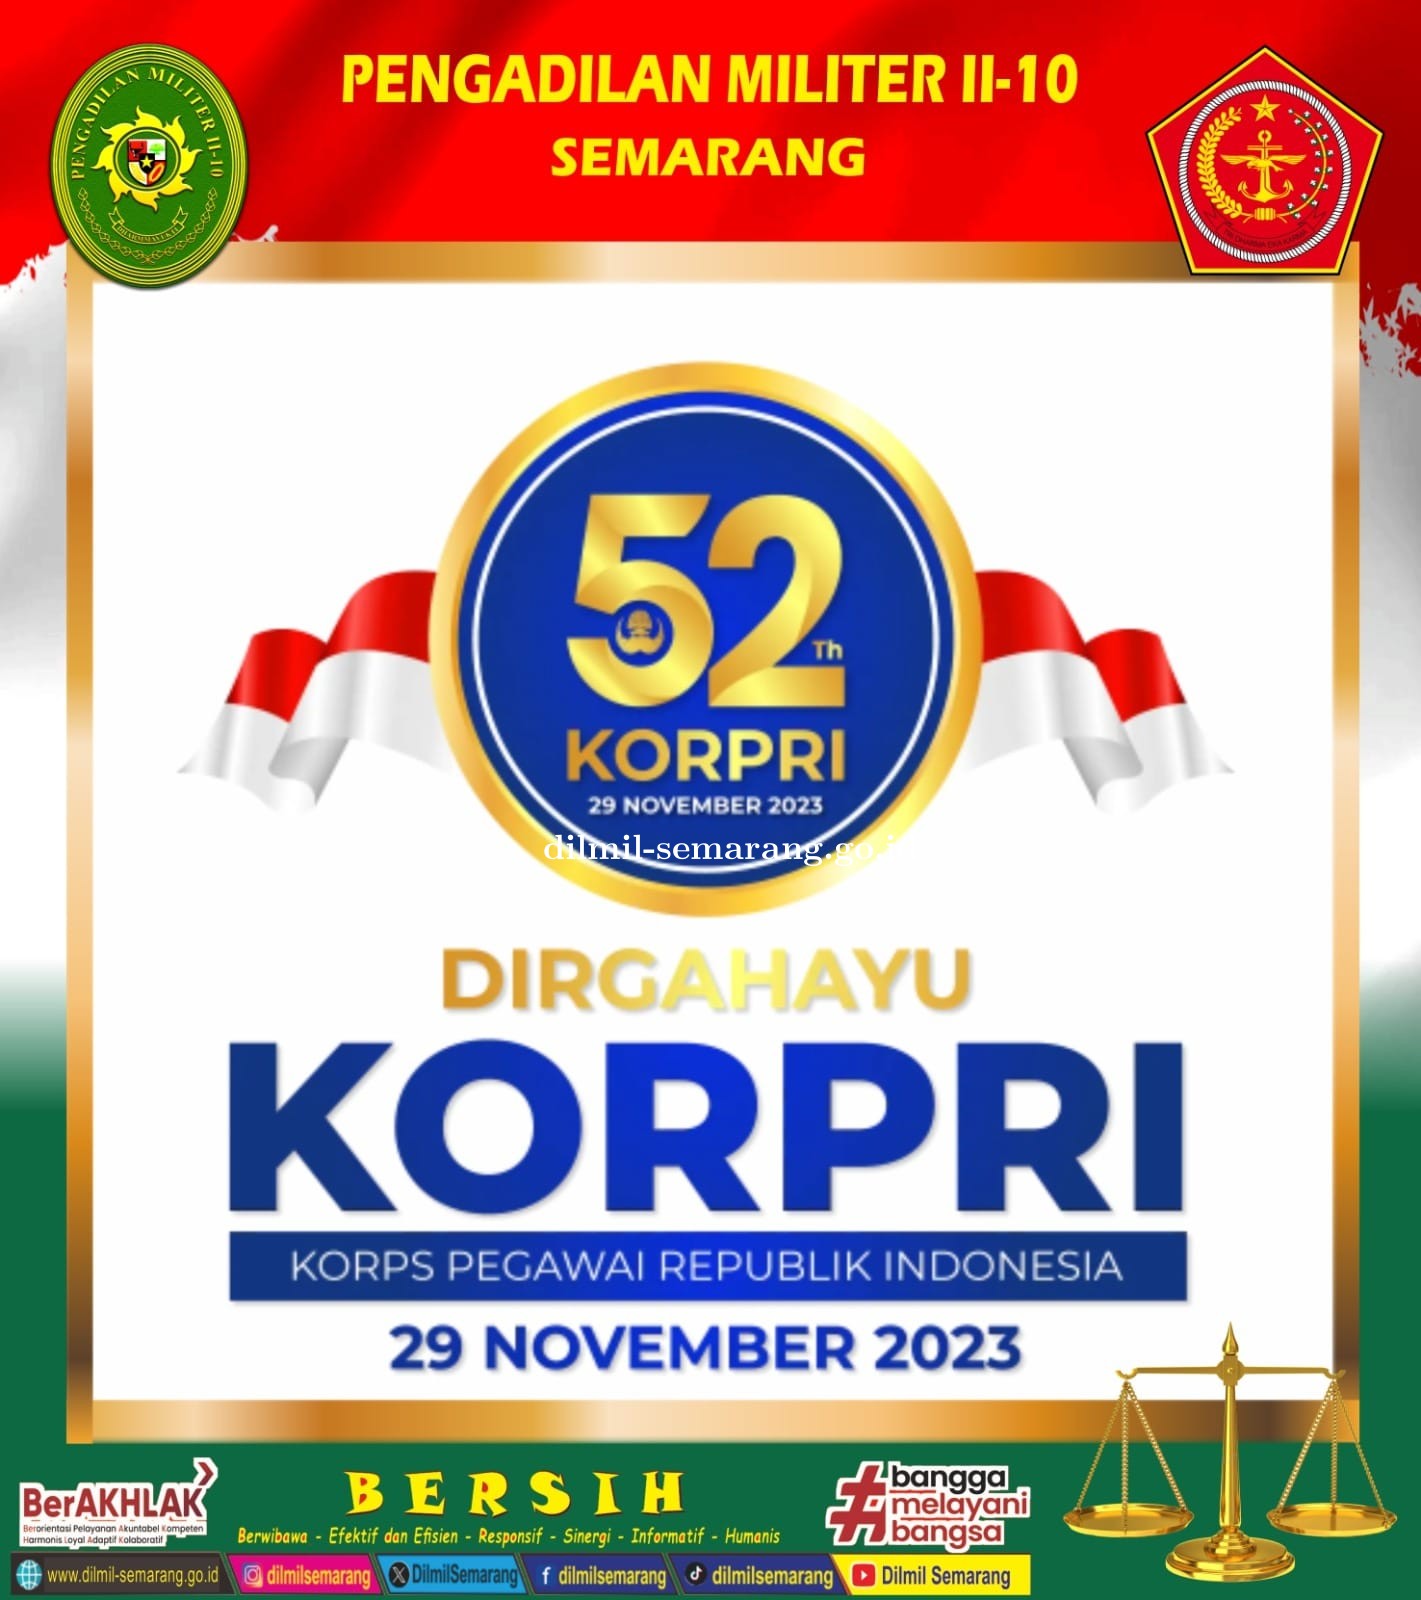 Selamat Hari Ulang Tahun Korps Pegawai Republik Indonesia Ke-52